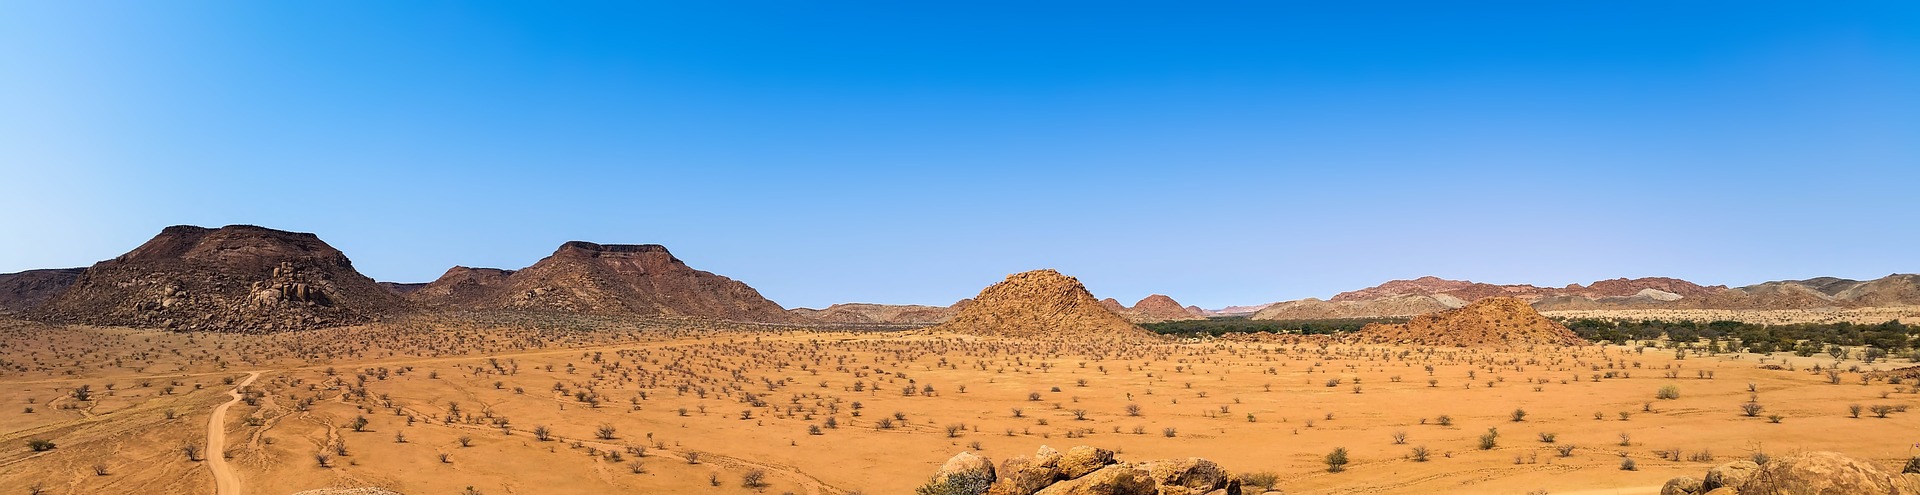 Erongogebirge in Namibia